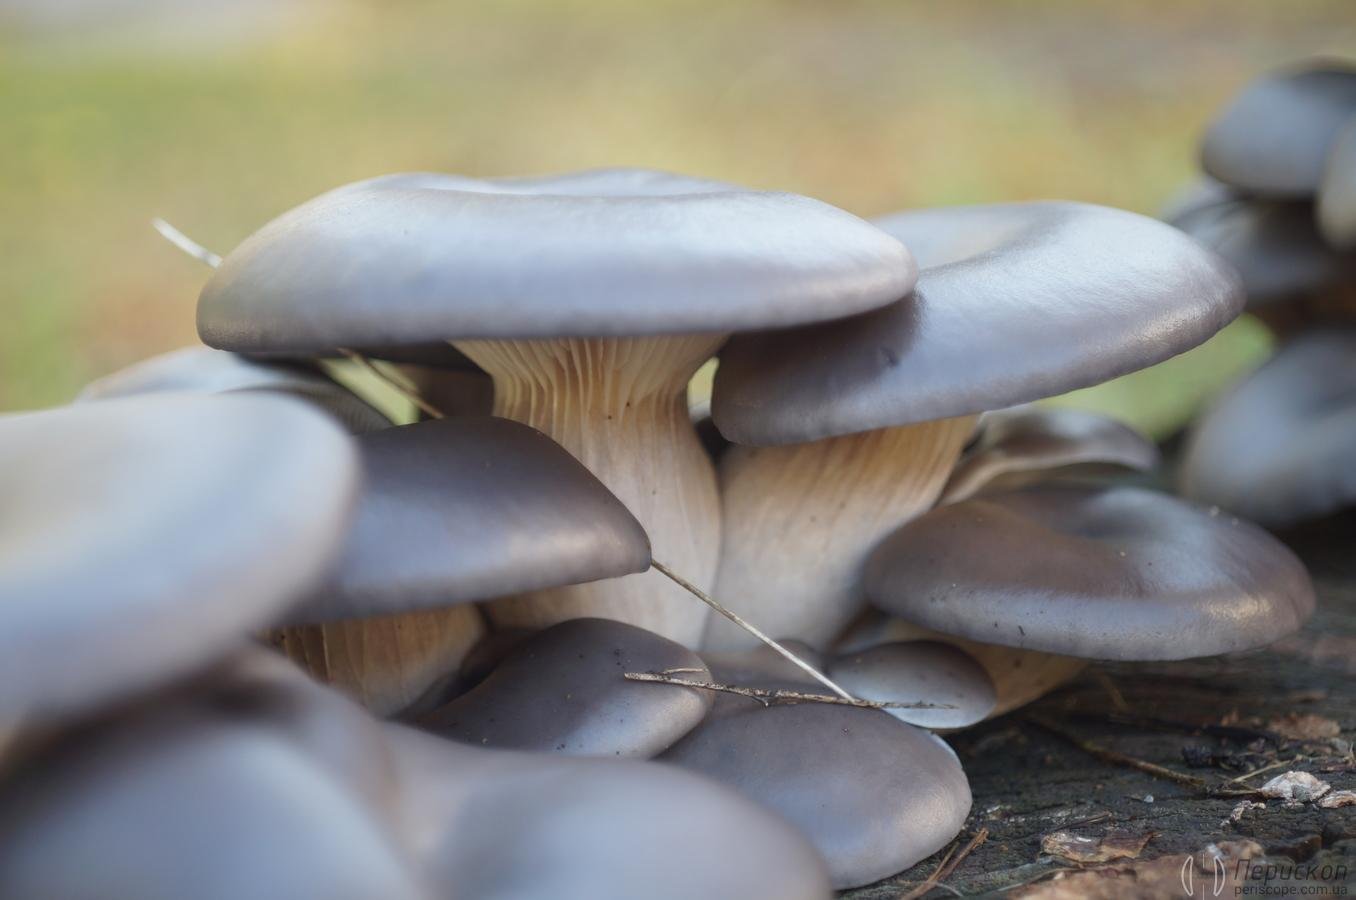 Пеньковые грибы съедобные